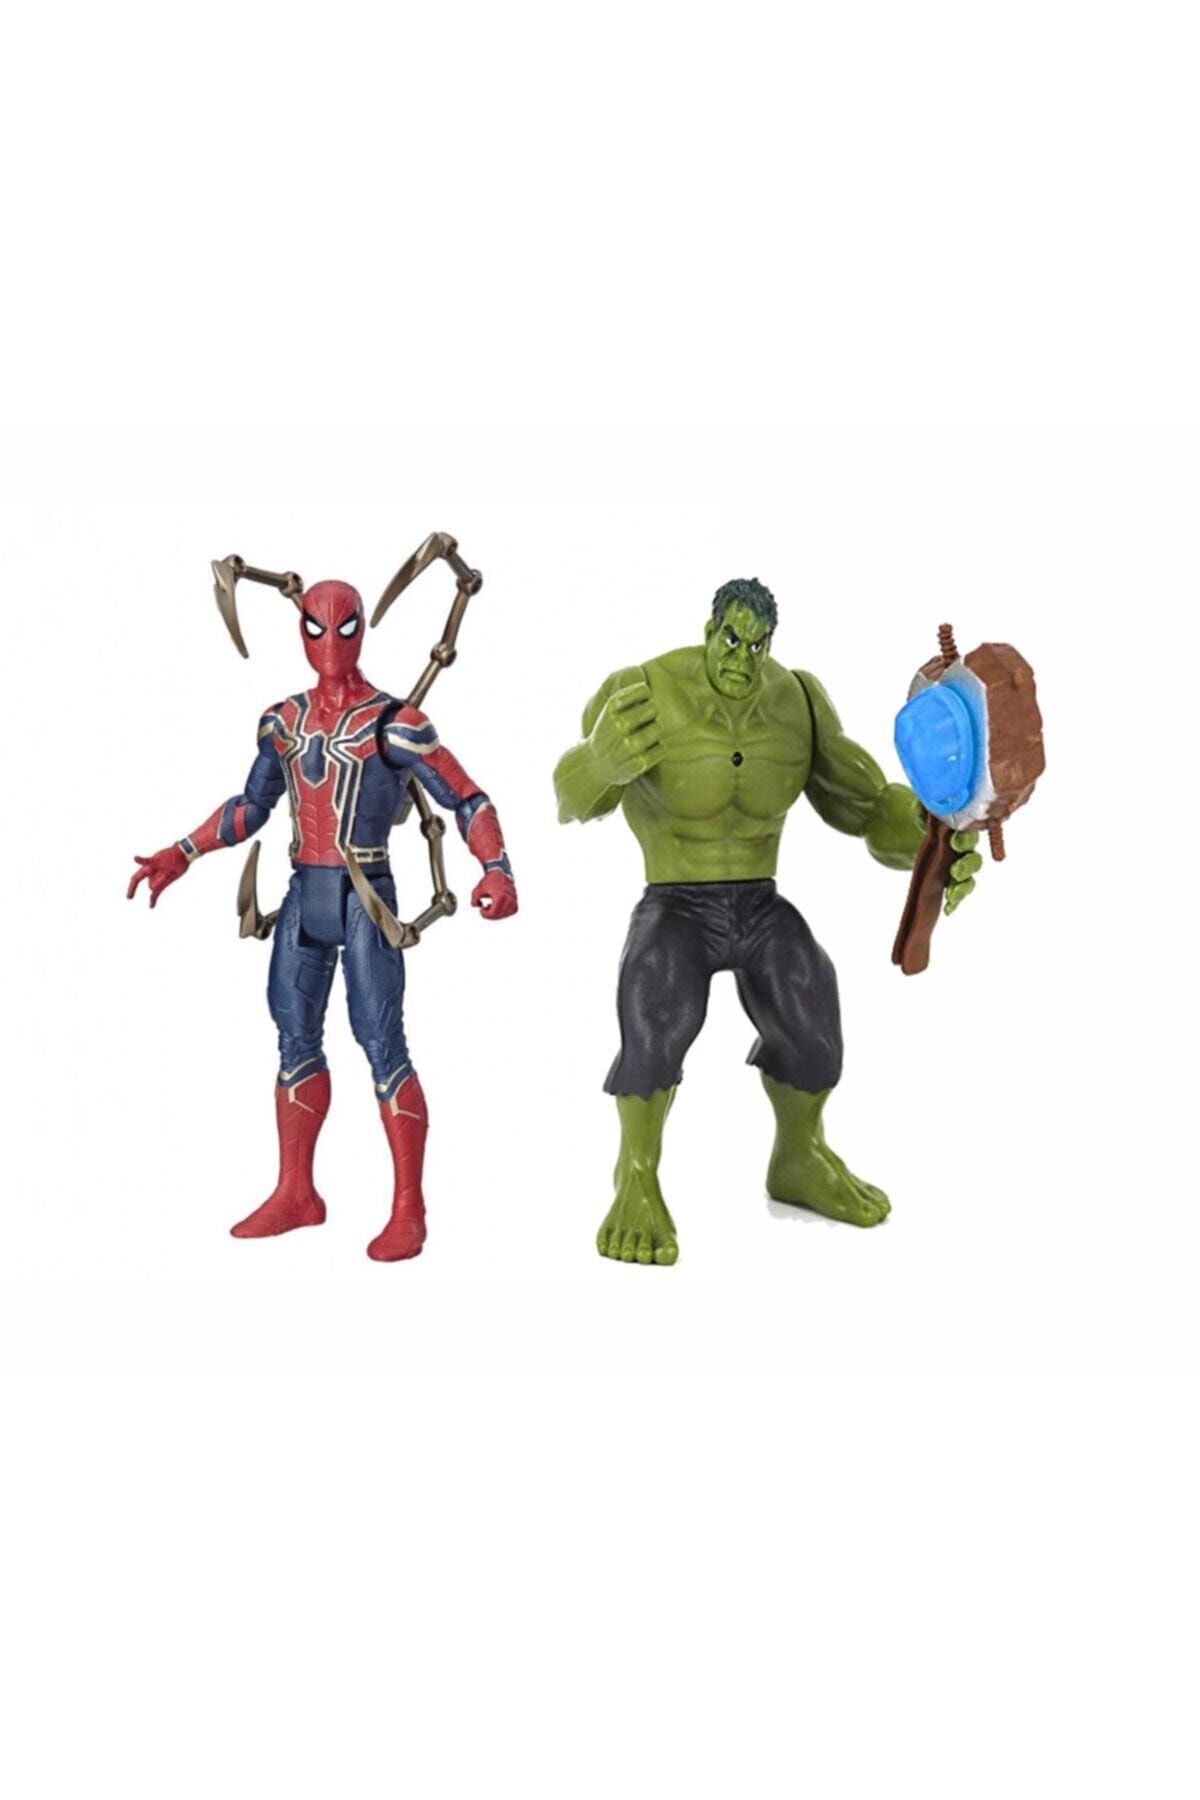 e-life Es89002 Yenilmezler Aksiyon Figür Oyuncak Spiderman & Hulk